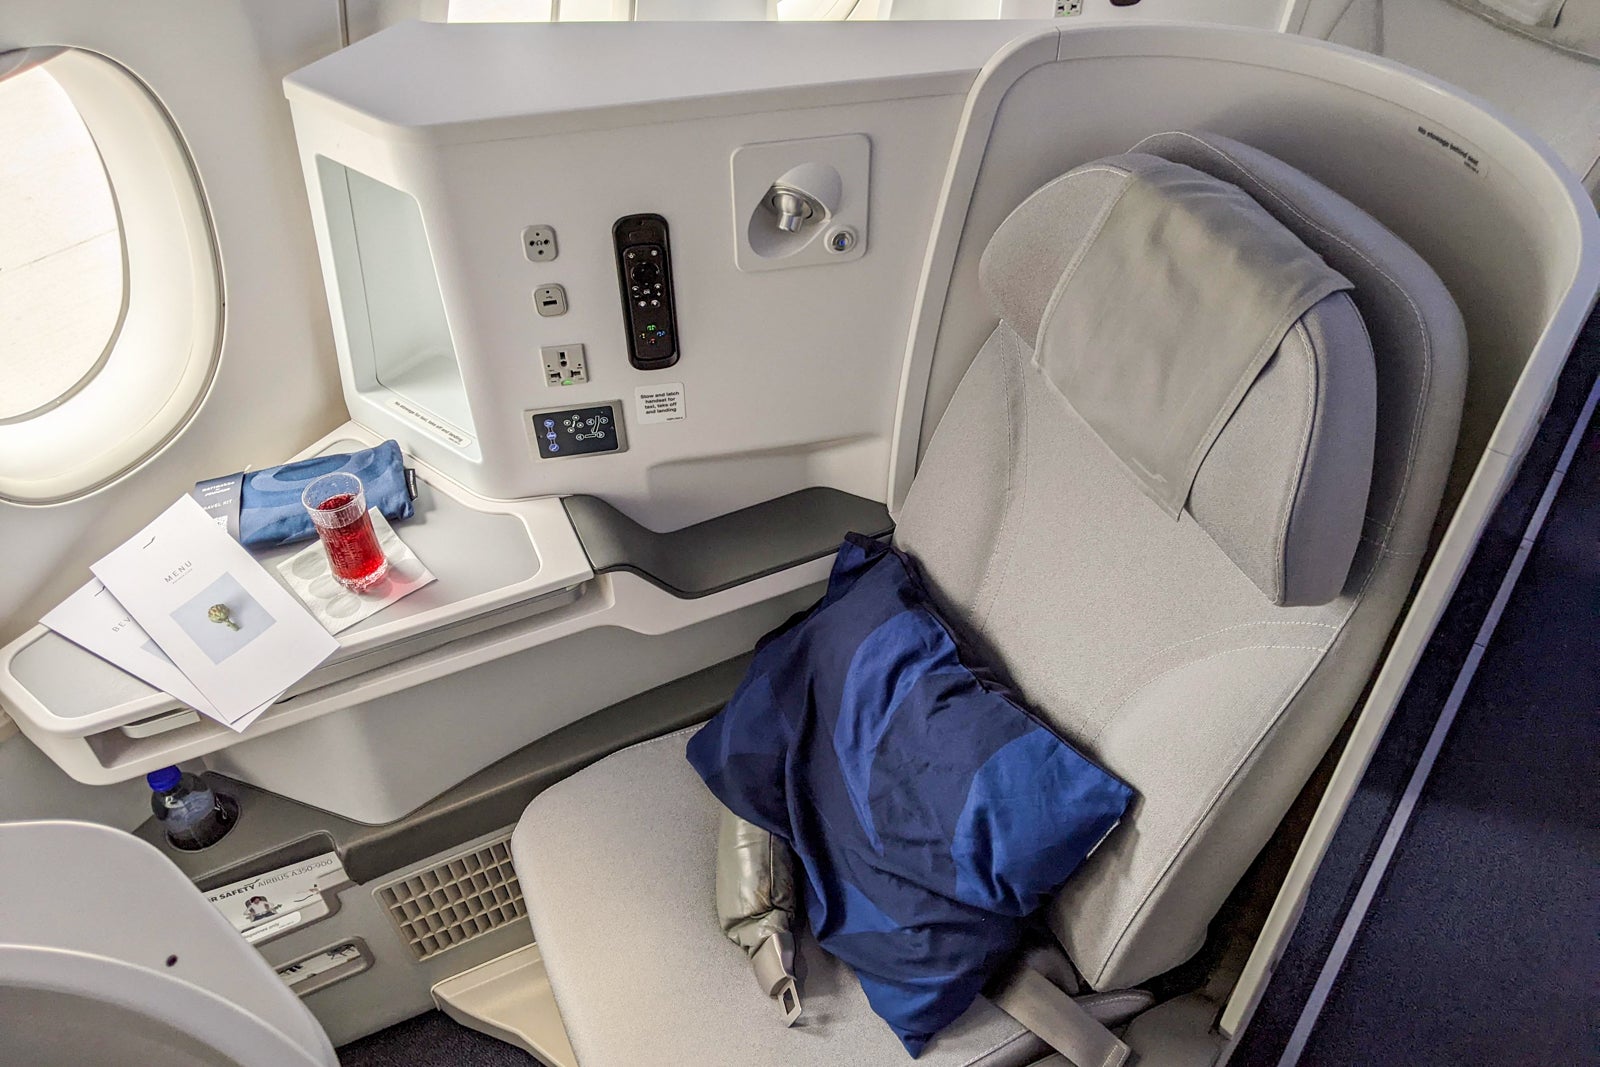 Finnair business class seat